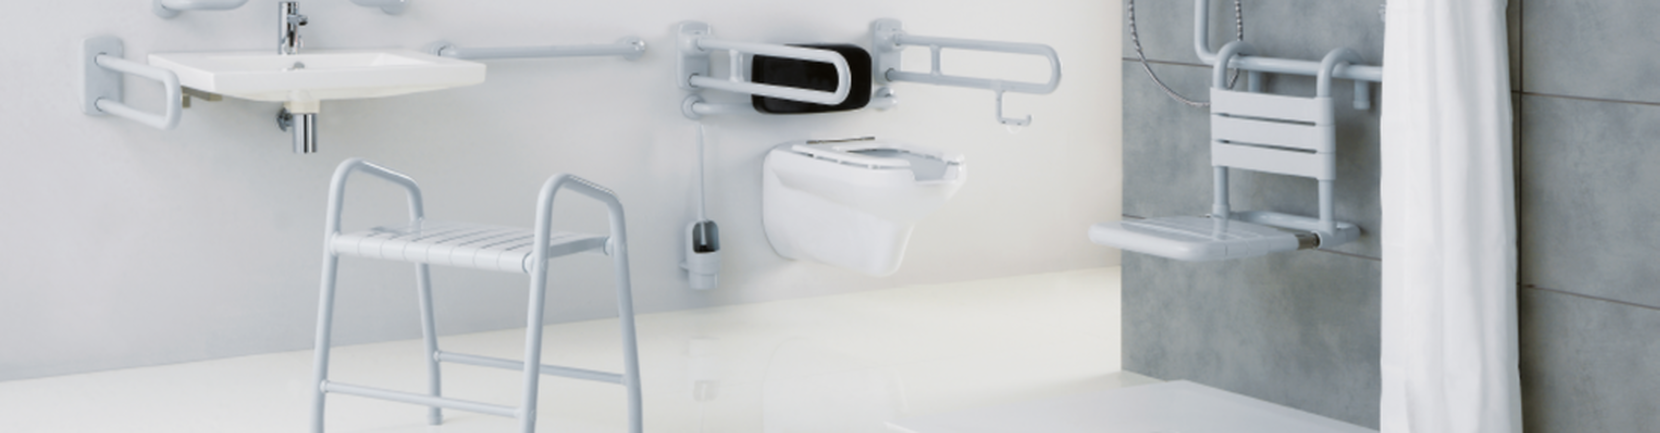 Intercom Applications: Handicap Public Washrooms | Intercom for toilets